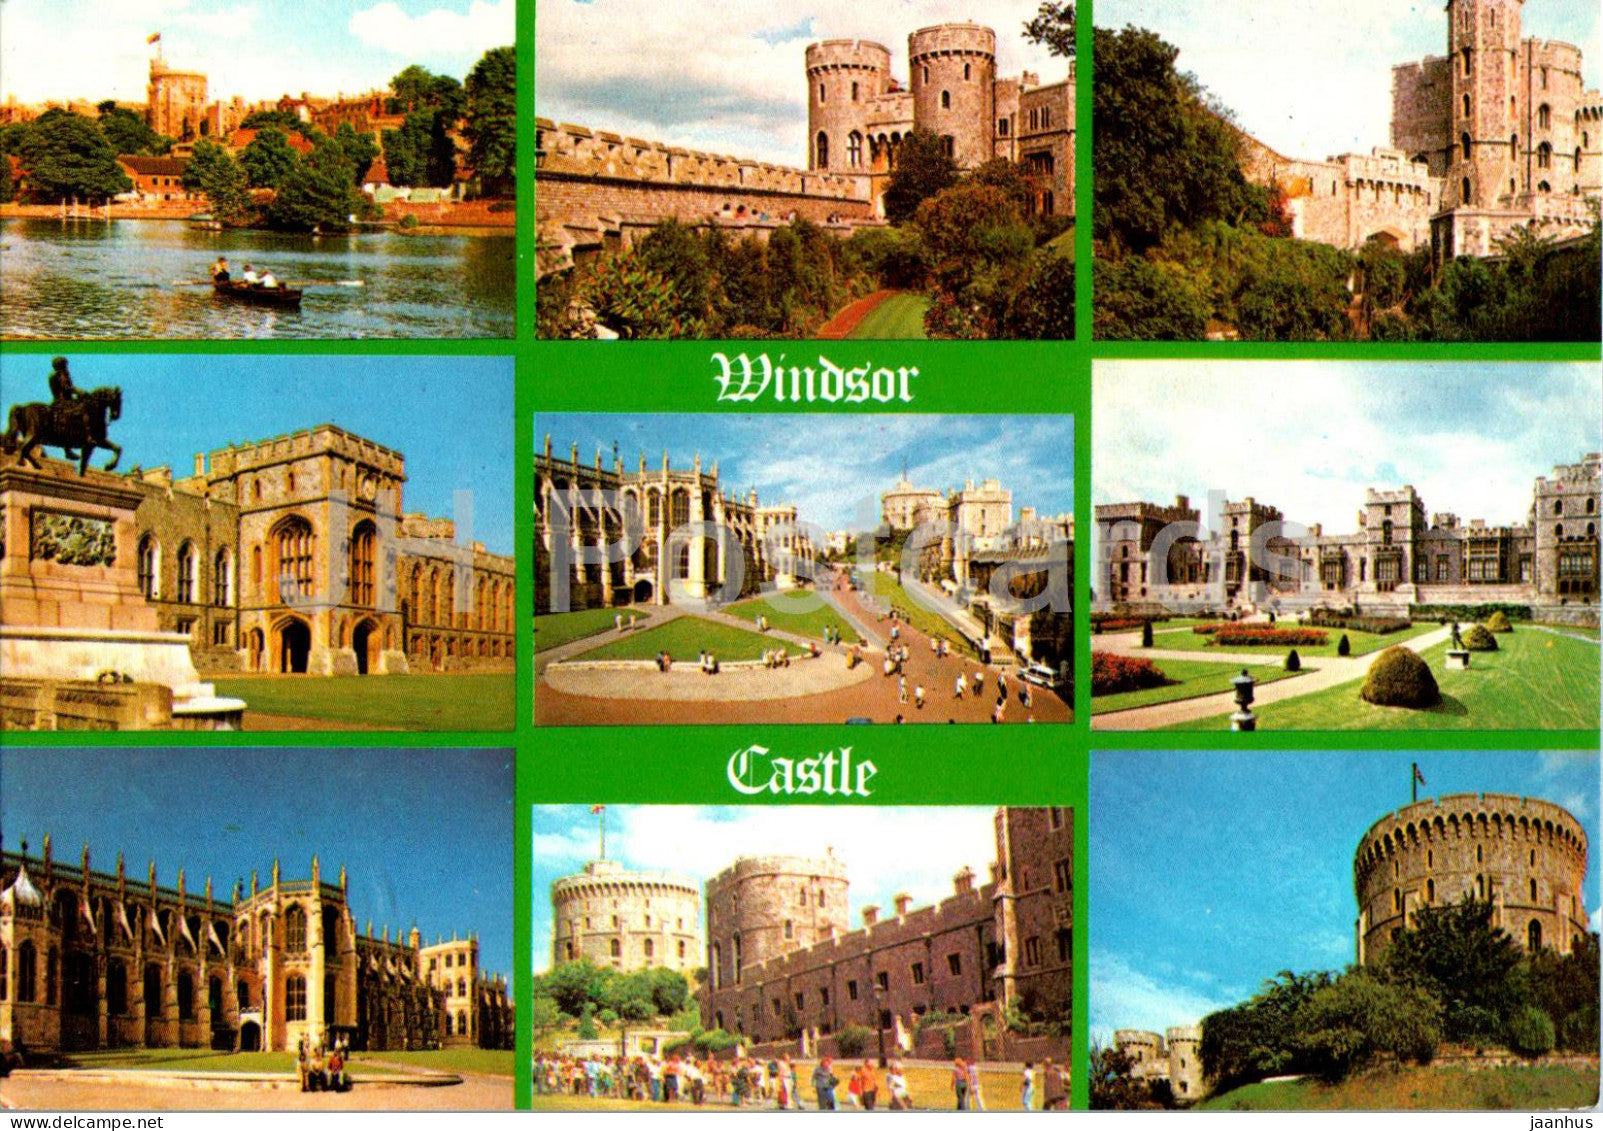 Windsor Castle - multiview - WID480 - England - United Kingdom - unused - JH Postcards